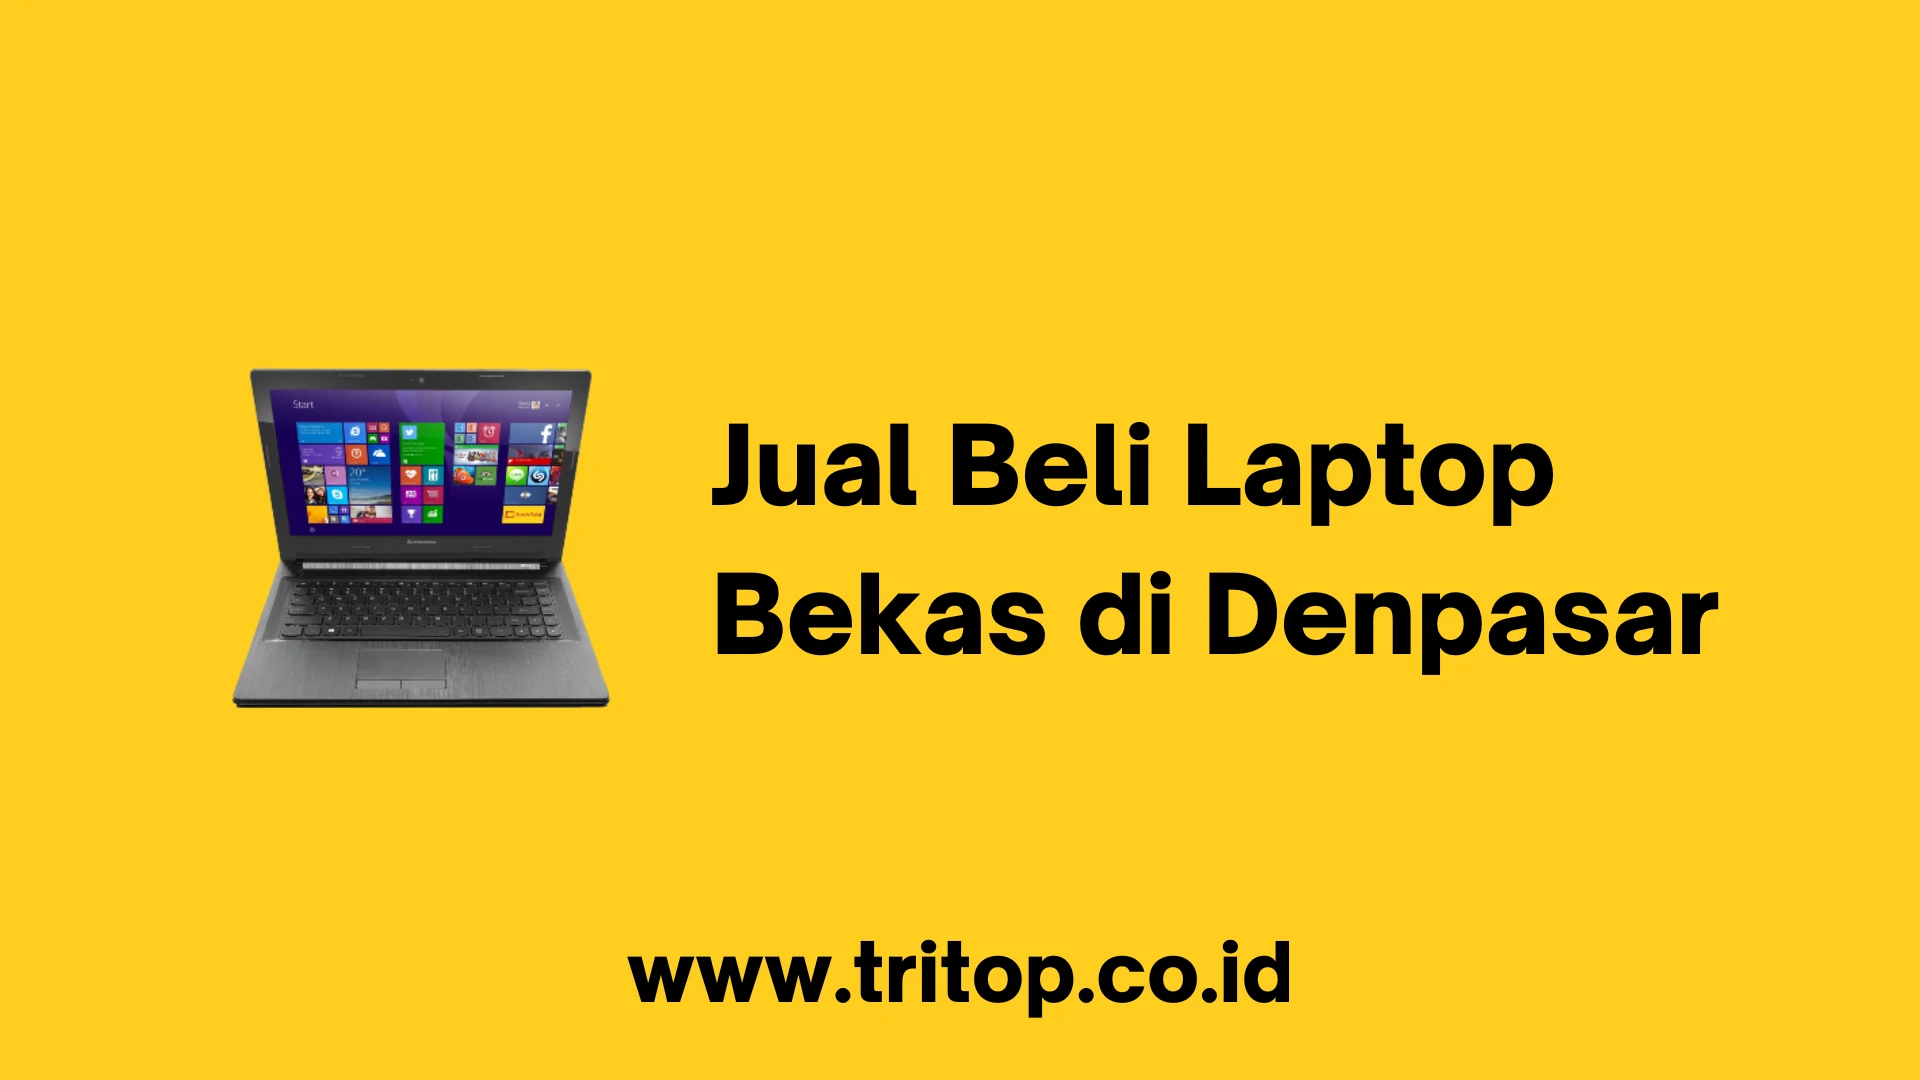 Jual Beli Laptop Bekas di Denpasar